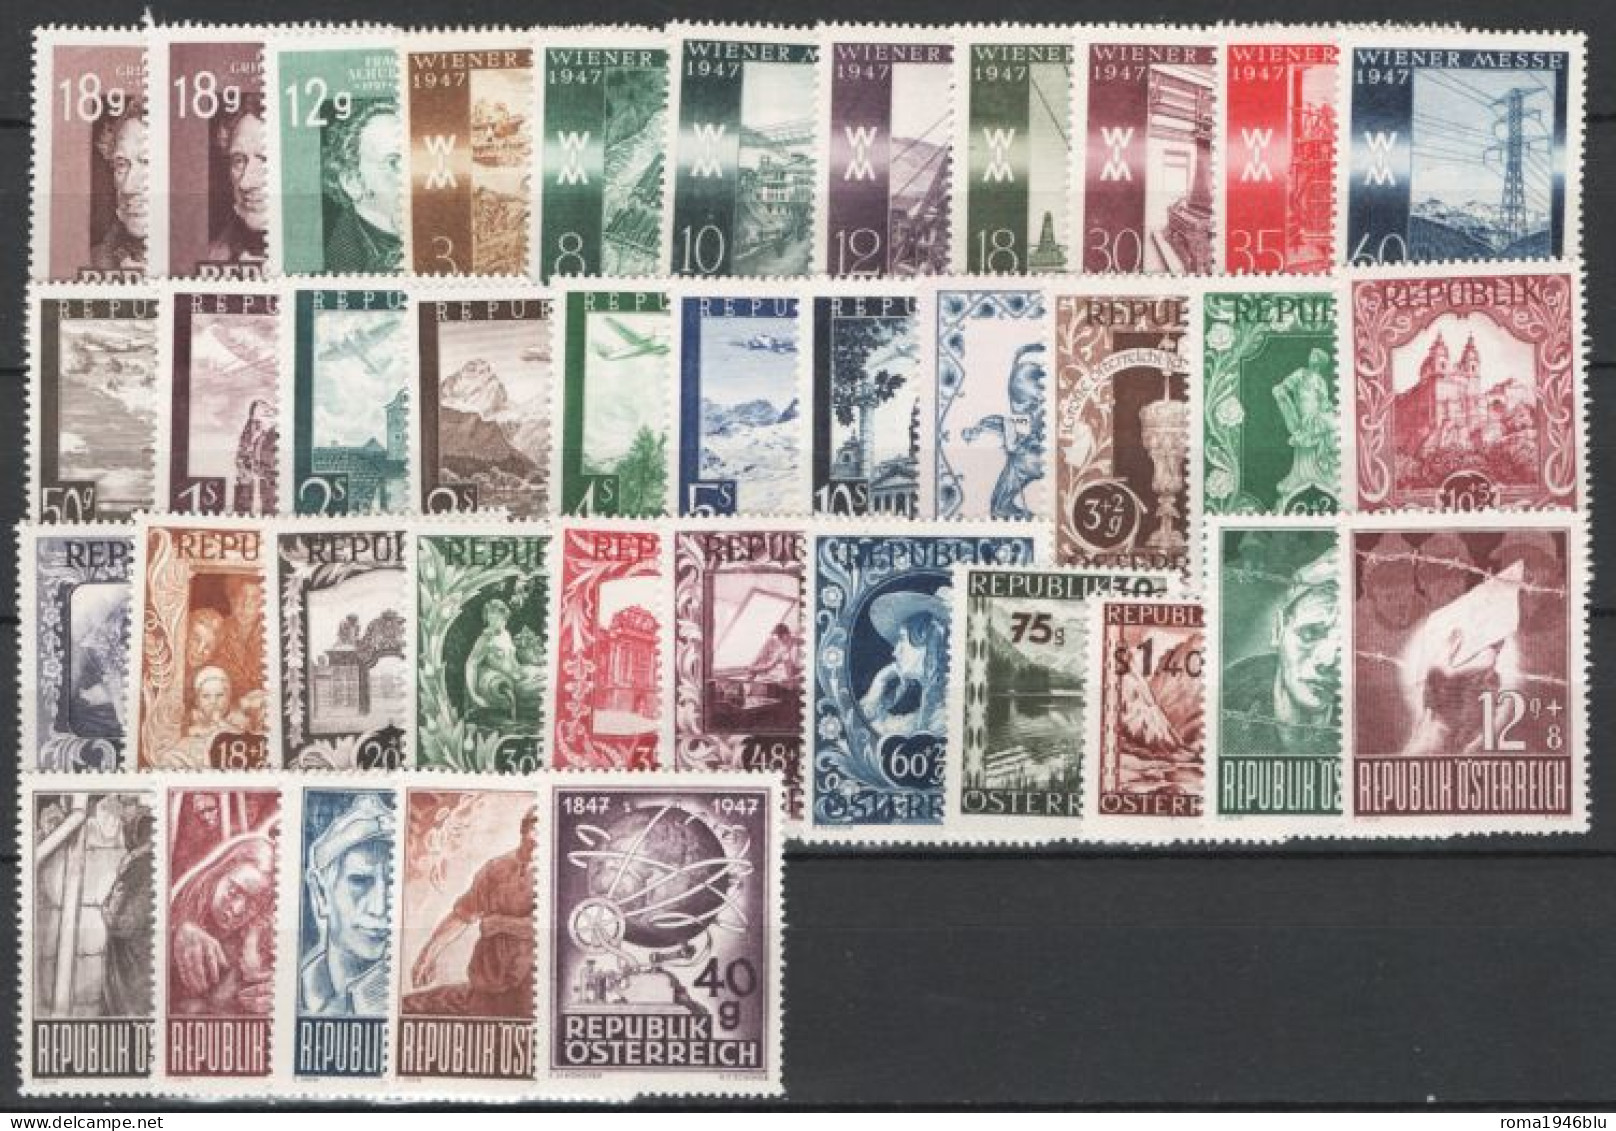 Austria 1947 Annata Completa Commemorativa  / Complete Commemorative Year Set **/MNH VF - Años Completos